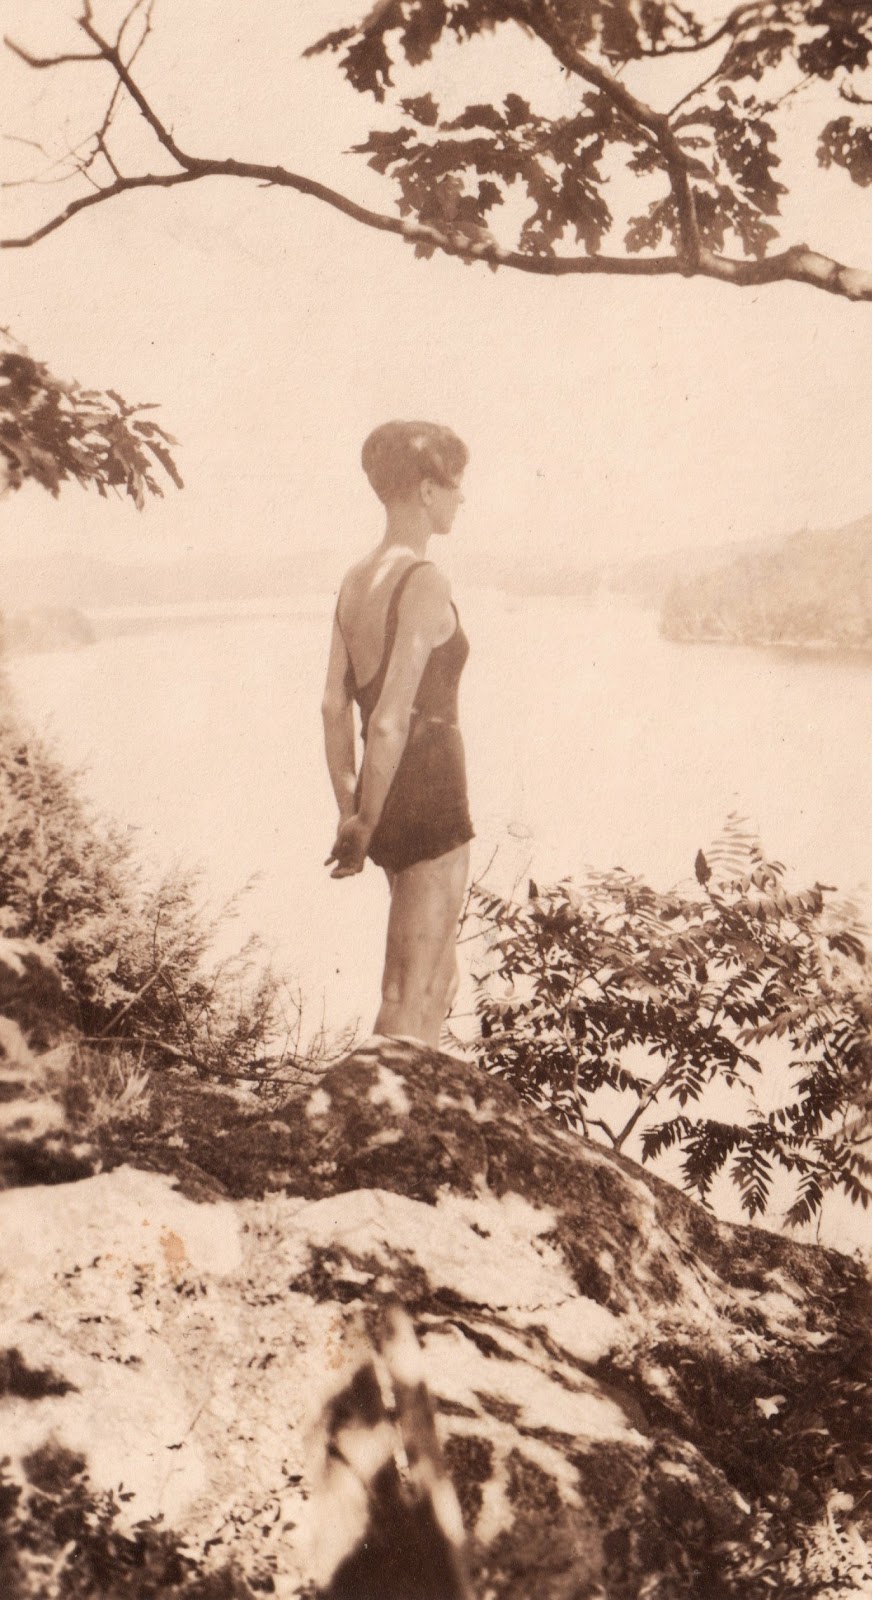 Elizabeth Anetta among the oaks & sumacs, 1931.